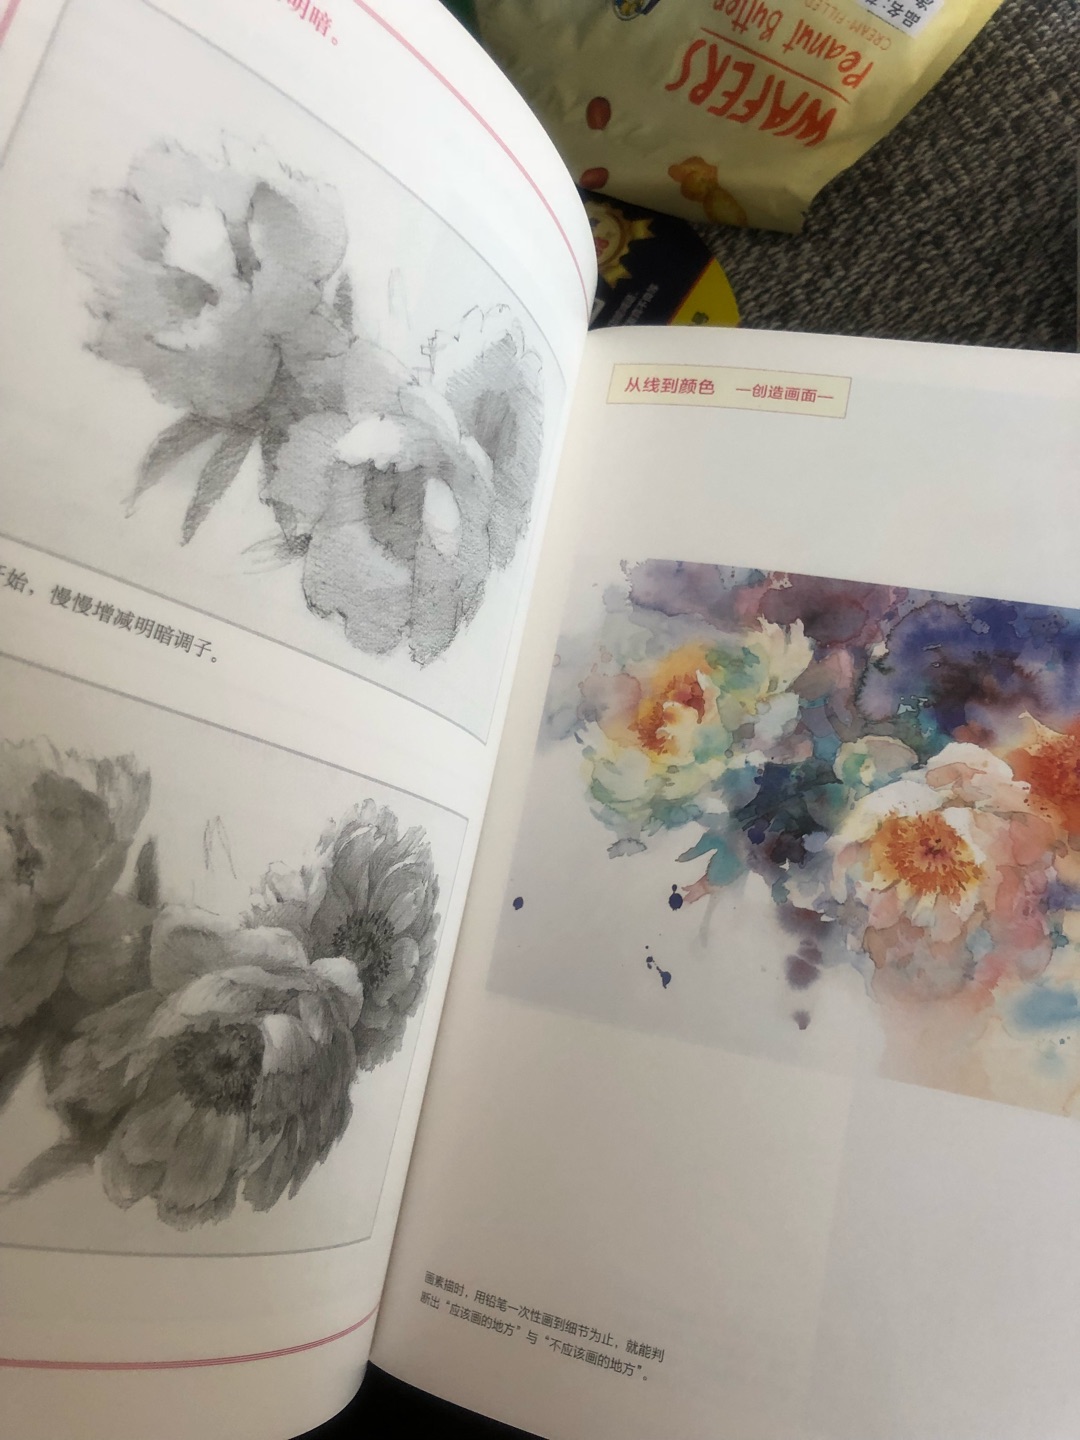 喜欢永山裕子的画，把一套书都买齐了，打算好好学习，书的质量不错，买书很方便价格也实惠，五星好评！